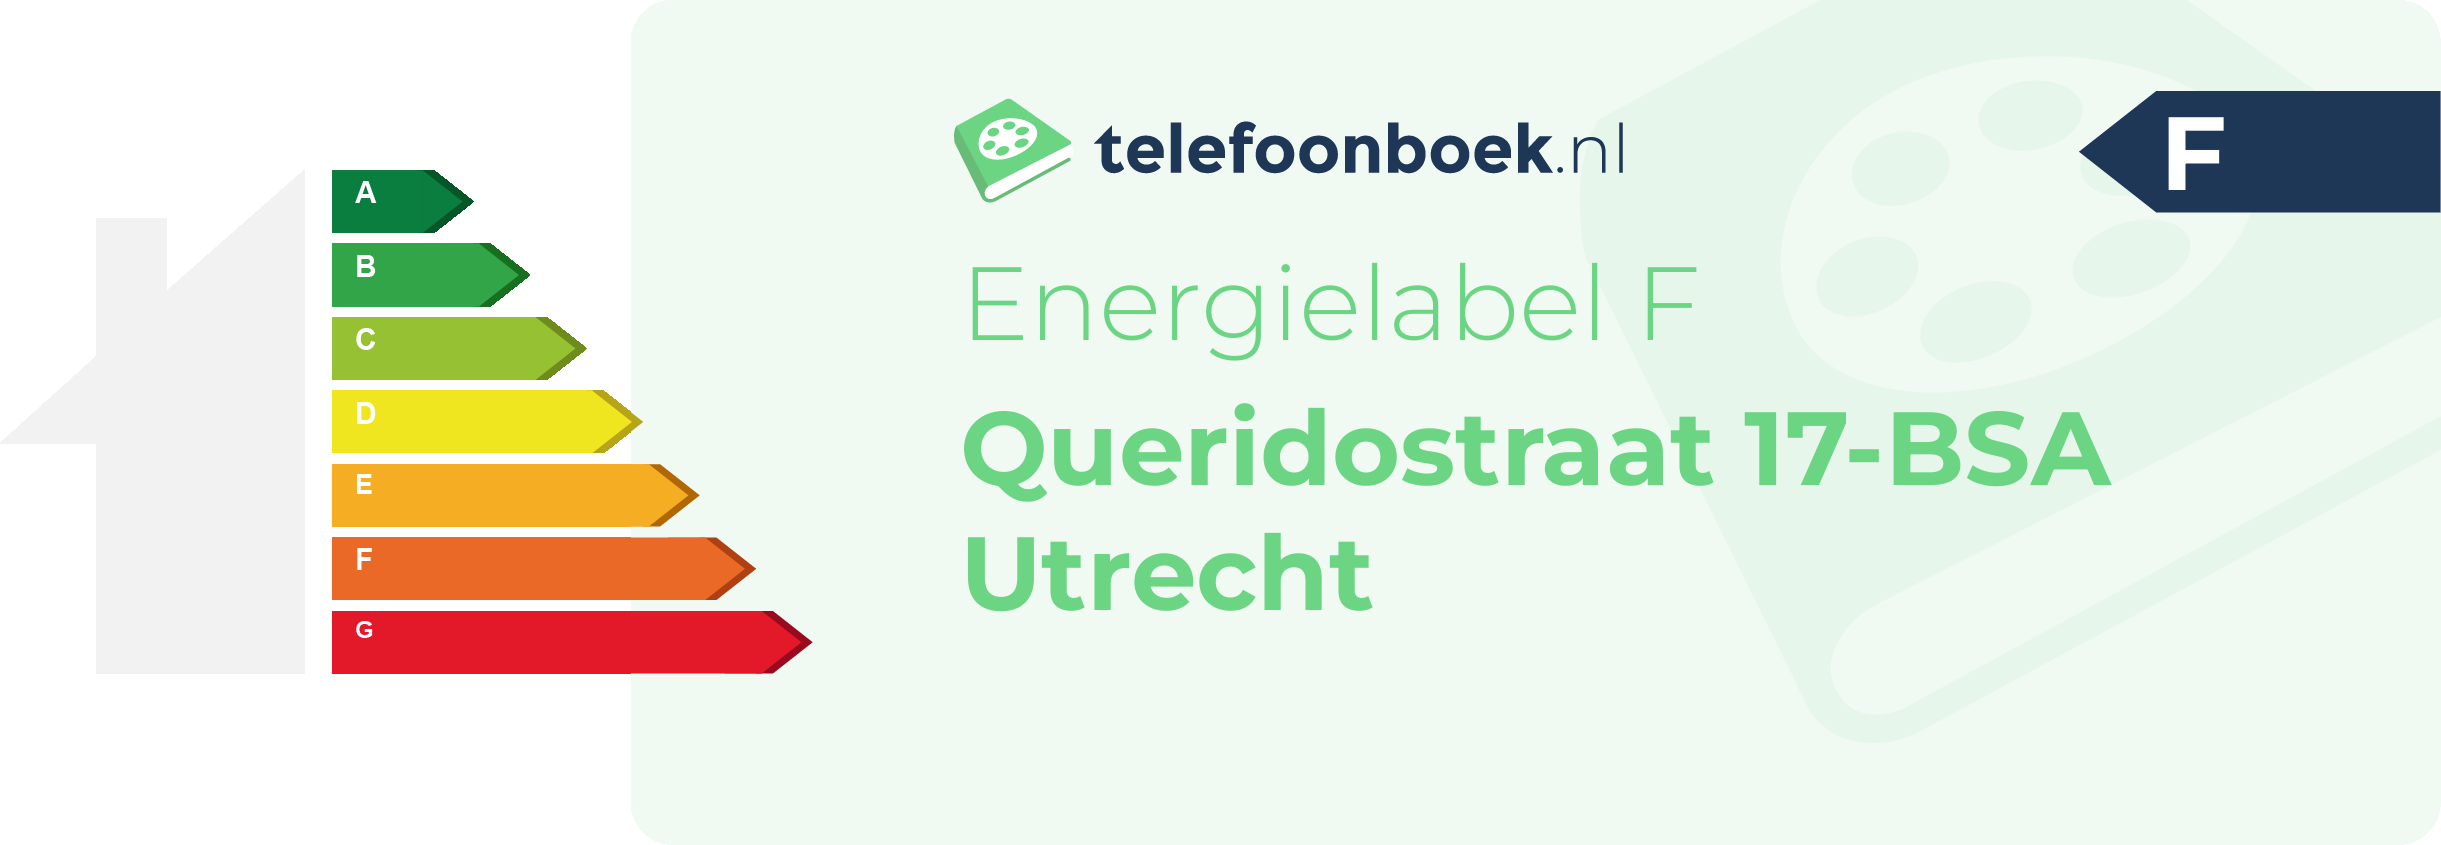 Energielabel Queridostraat 17-BSA Utrecht